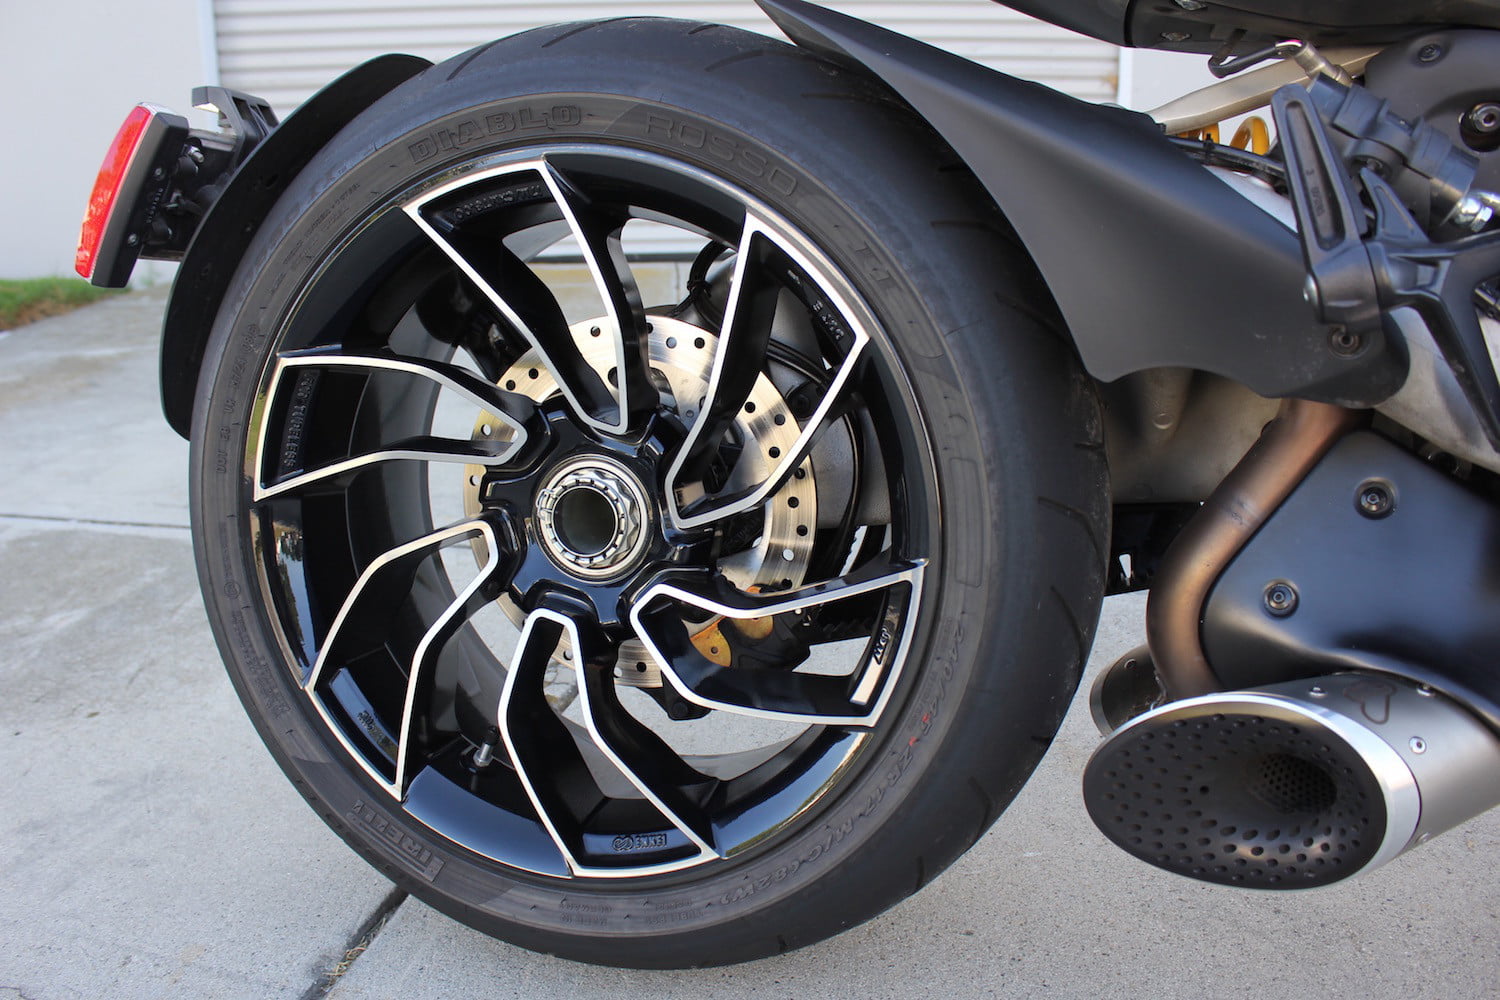 Lốp xe khả năng bám đường cao chống trơn trượt 